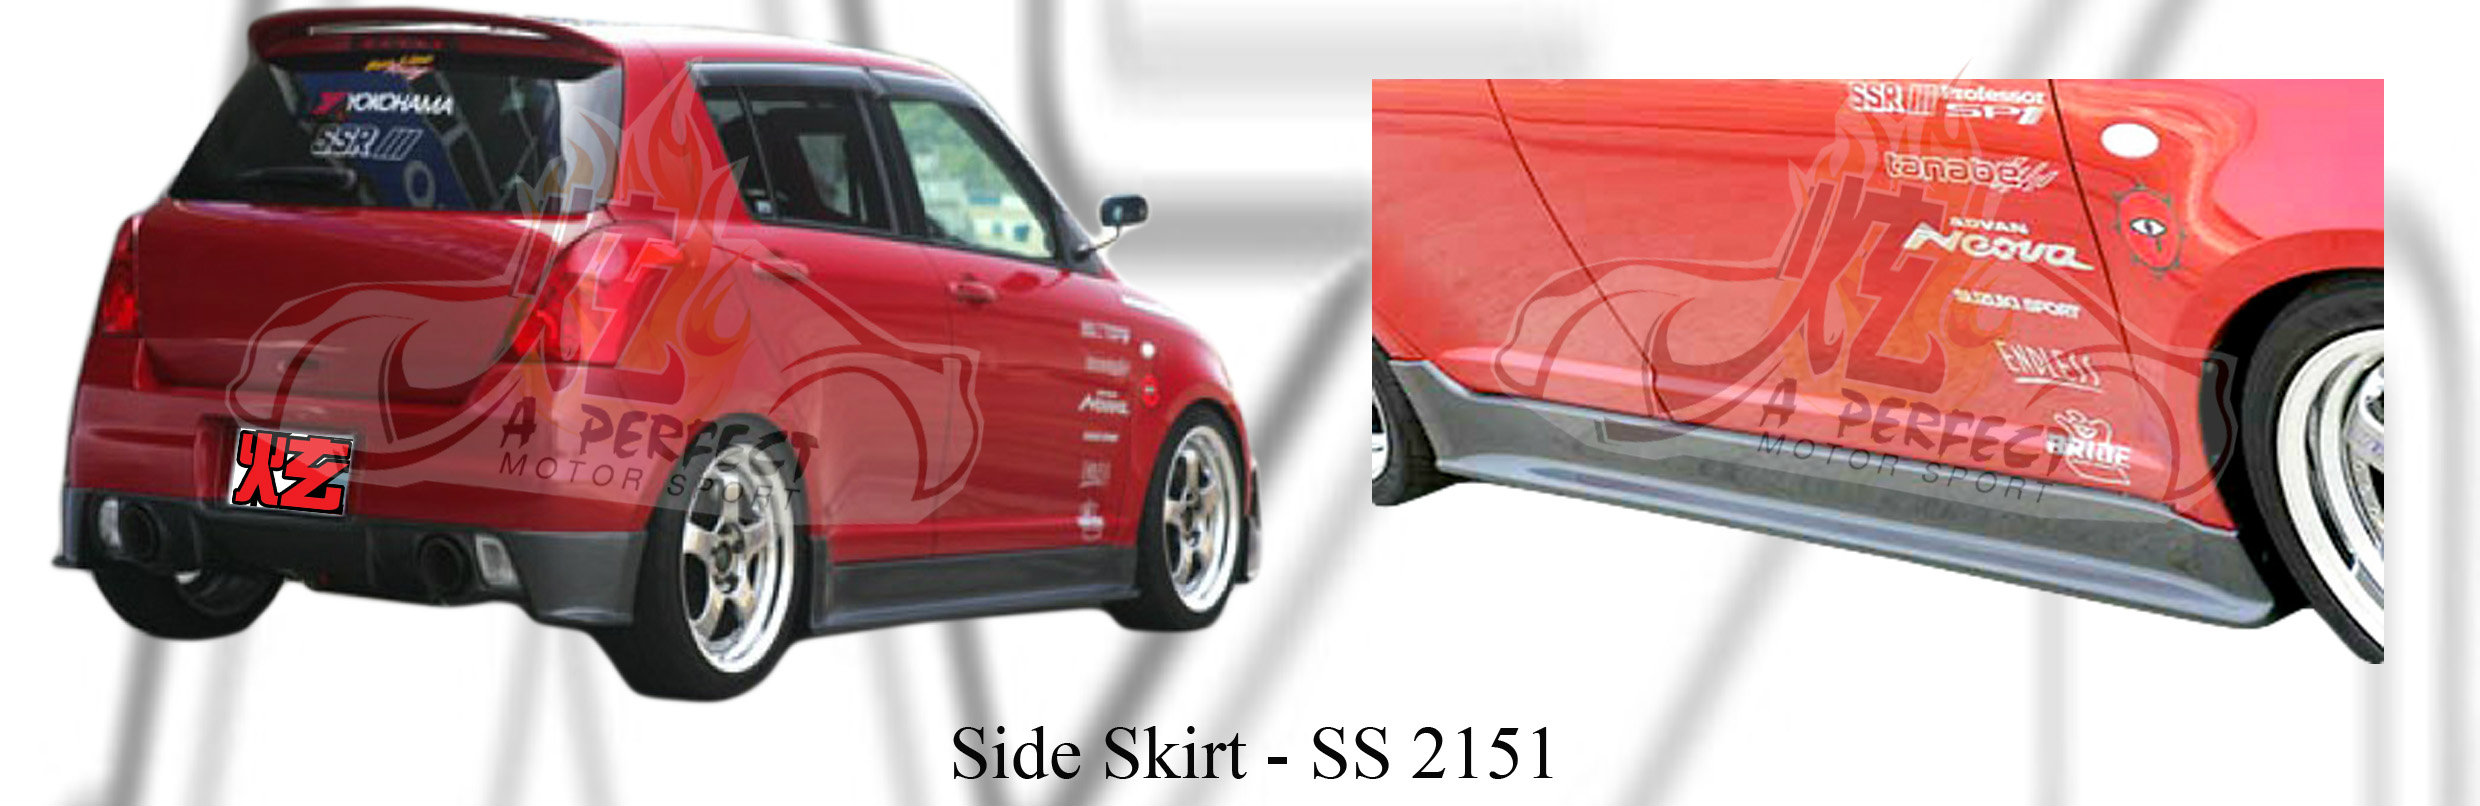 Suzuki Swift SL Style Side Skirt 